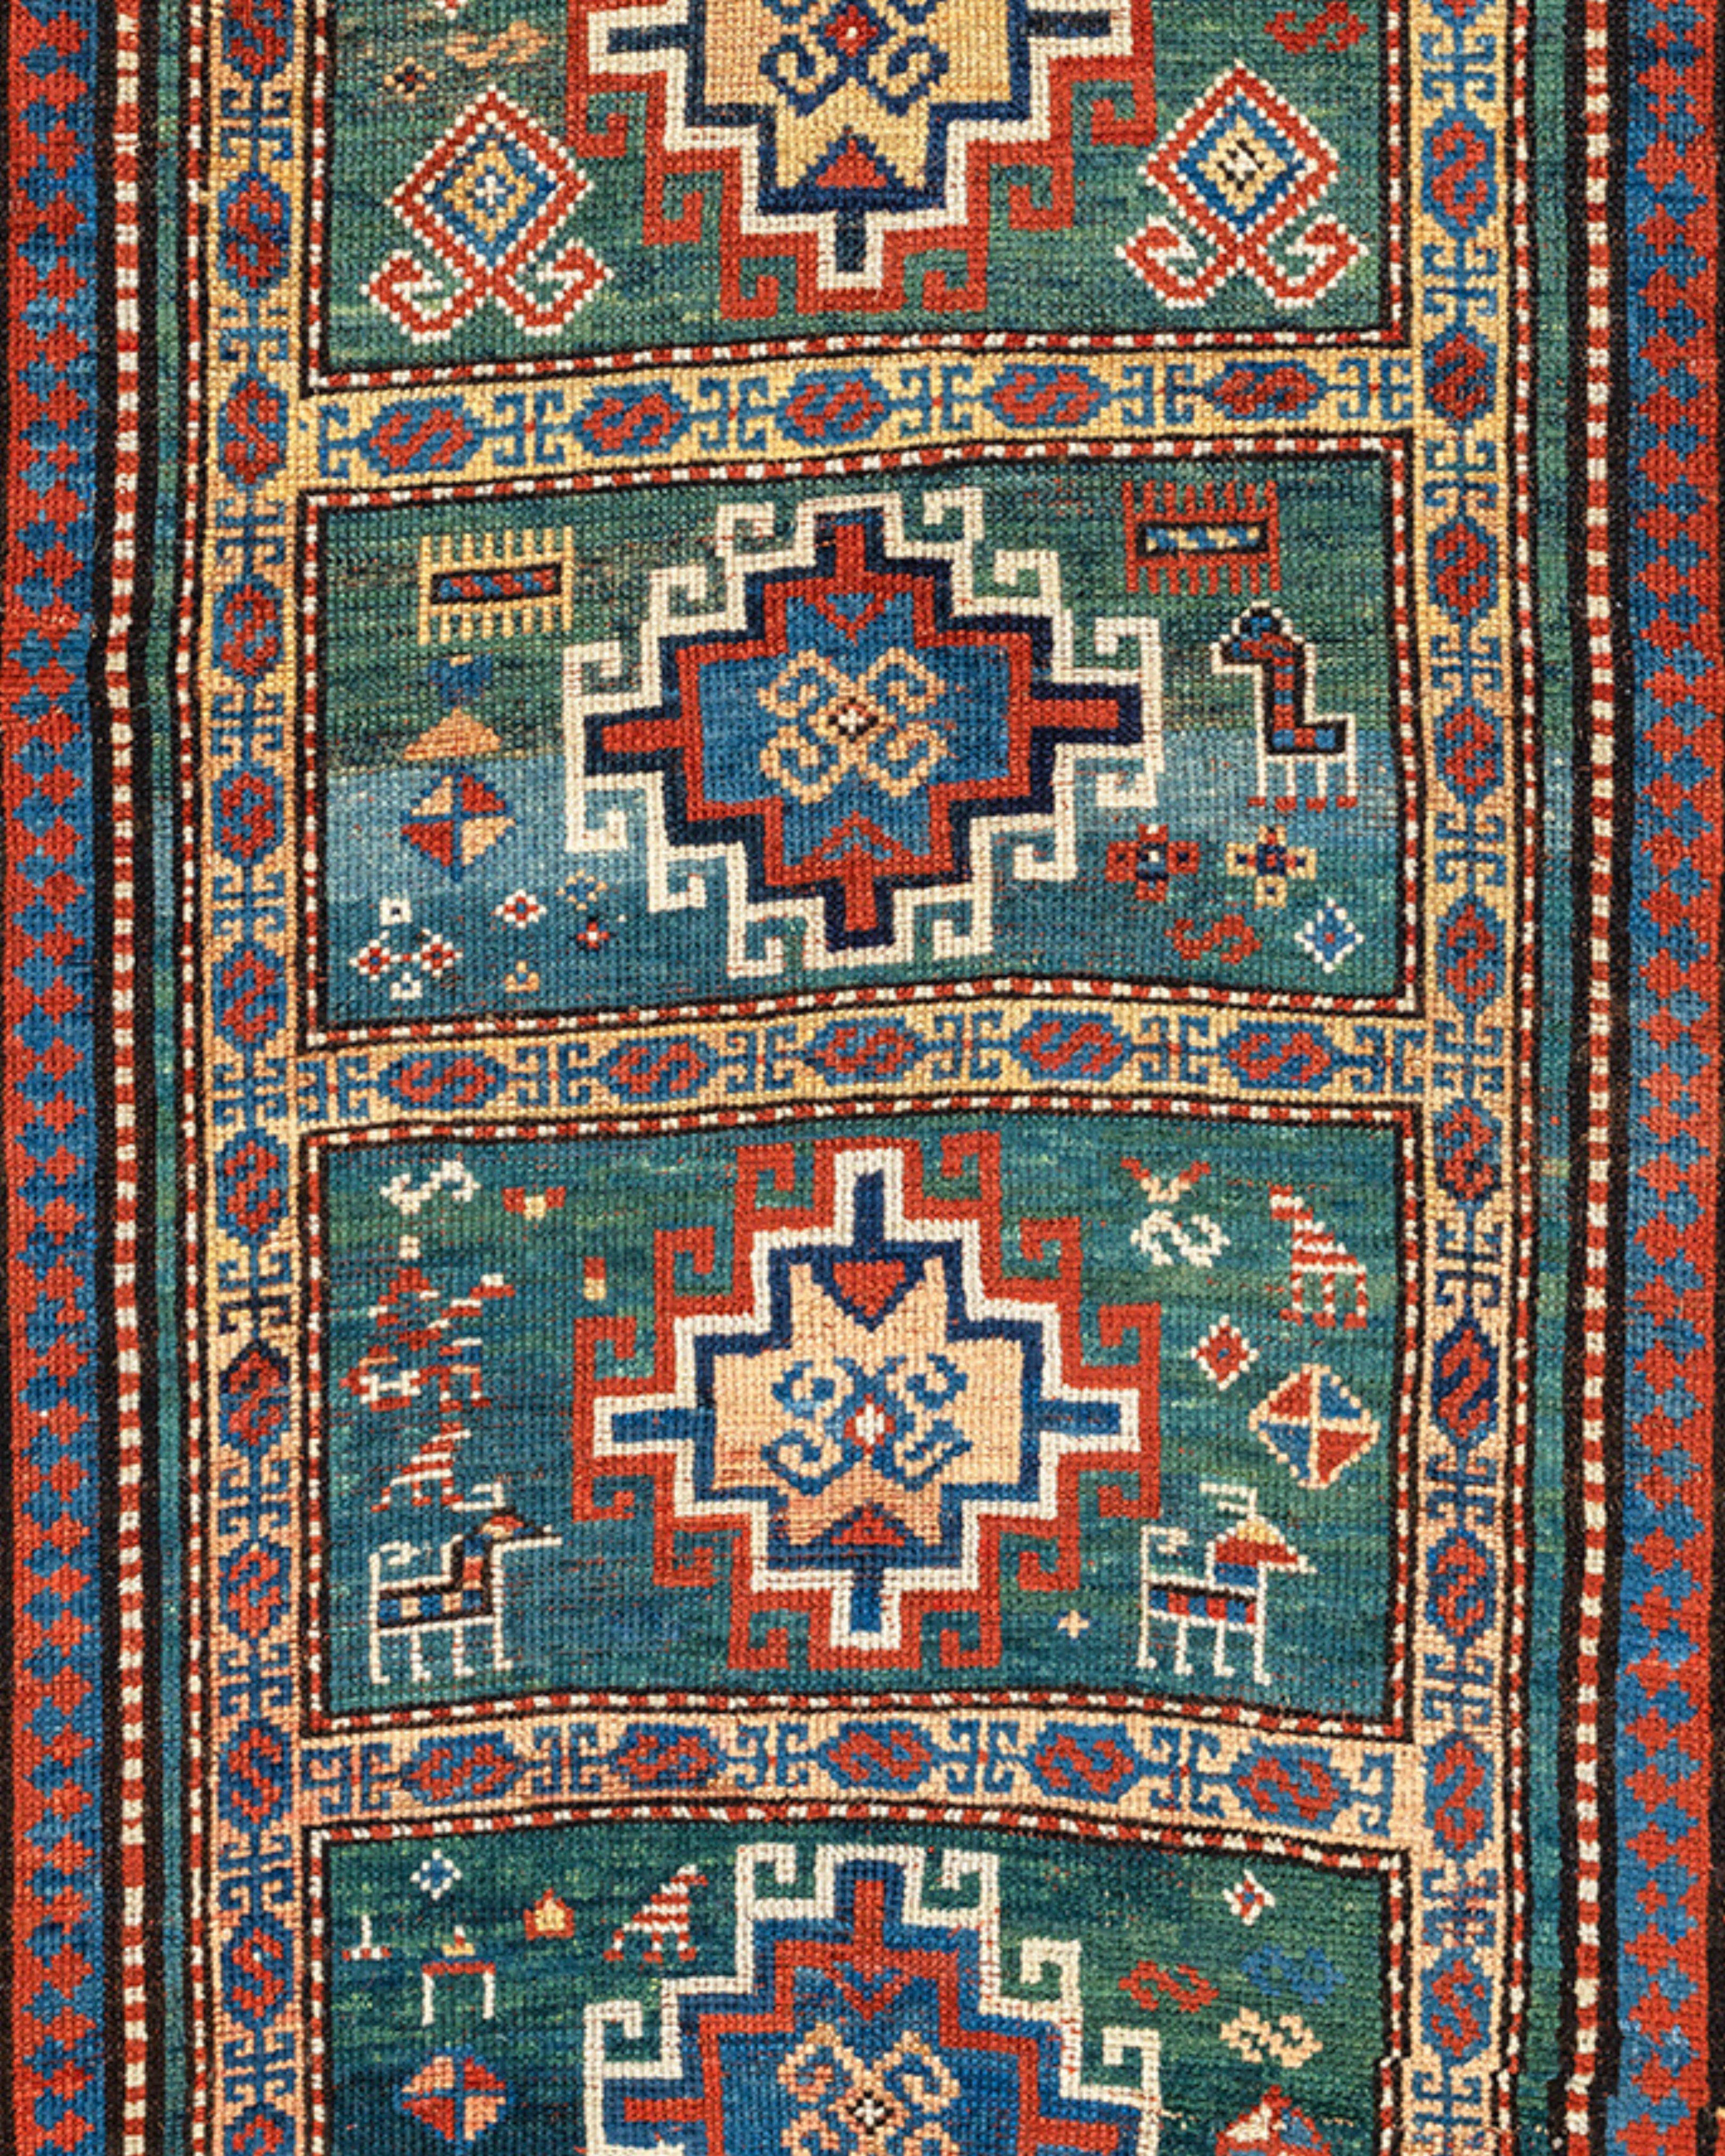 Ancien tapis caucasien Kazak, fin du 19e siècle

Vendu au nom du Dr. et de Mme Timothy McCormack

Informations supplémentaires :
Dimensions : 3'11